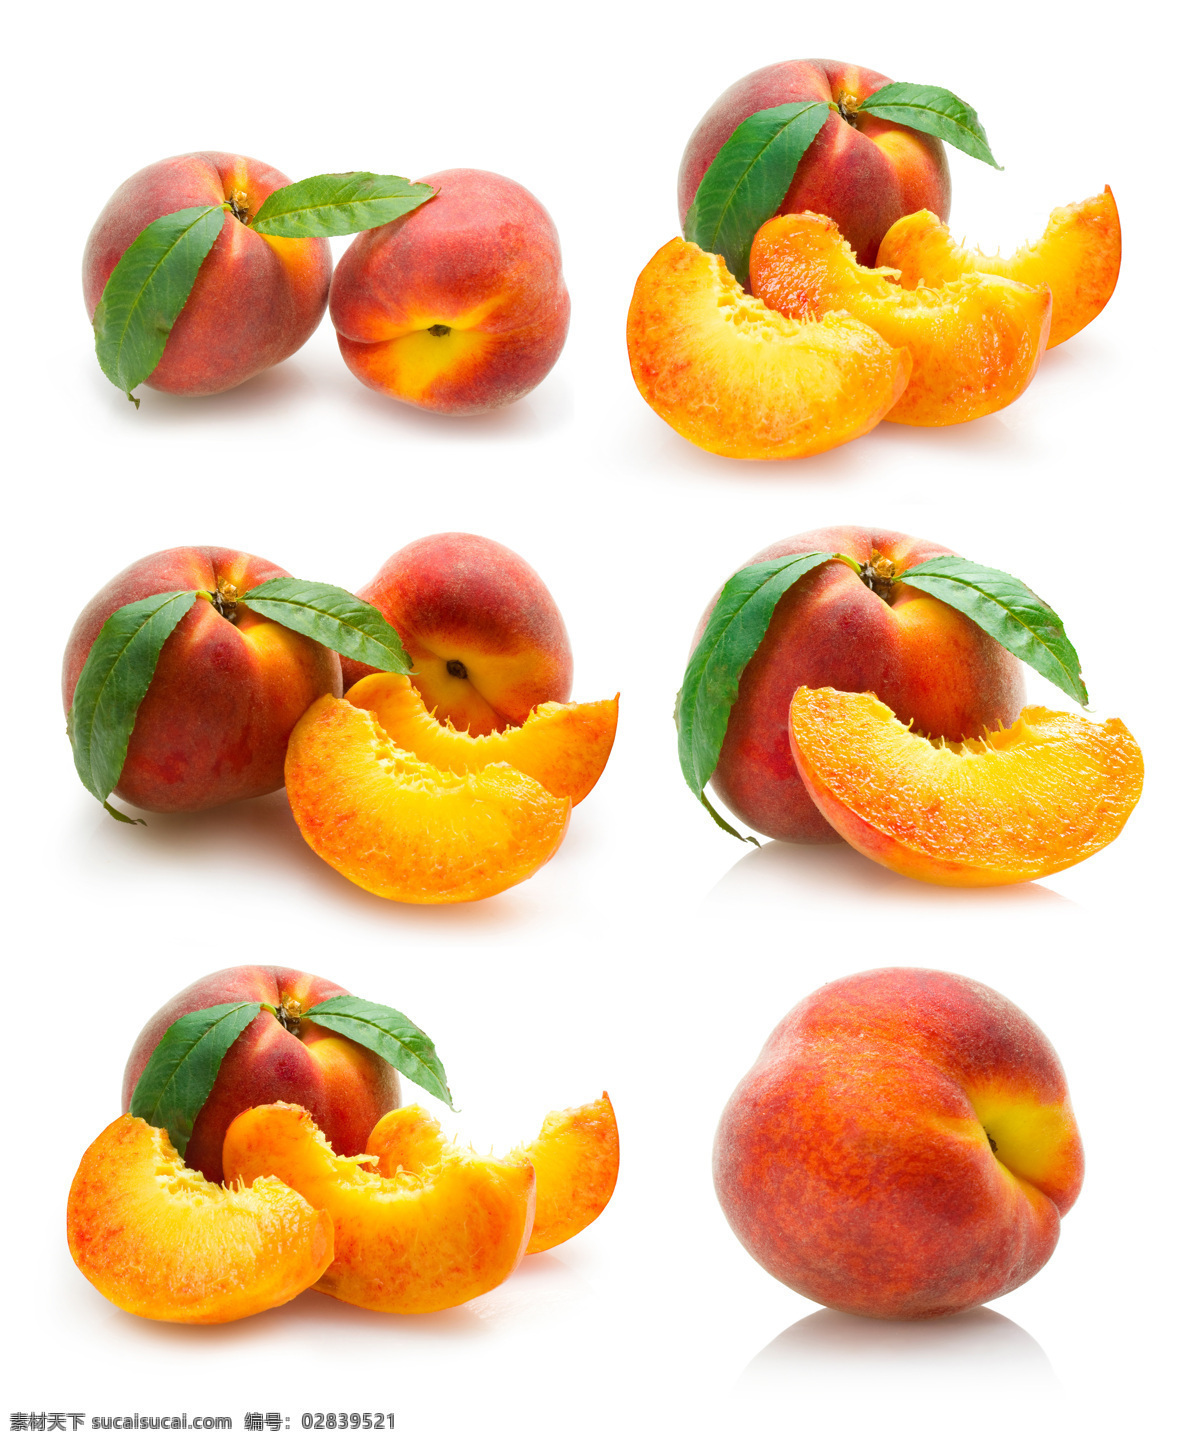 新鲜 水蜜桃 新鲜水蜜桃 桃子 新鲜水果 果实 水果摄影 蔬菜图片 餐饮美食